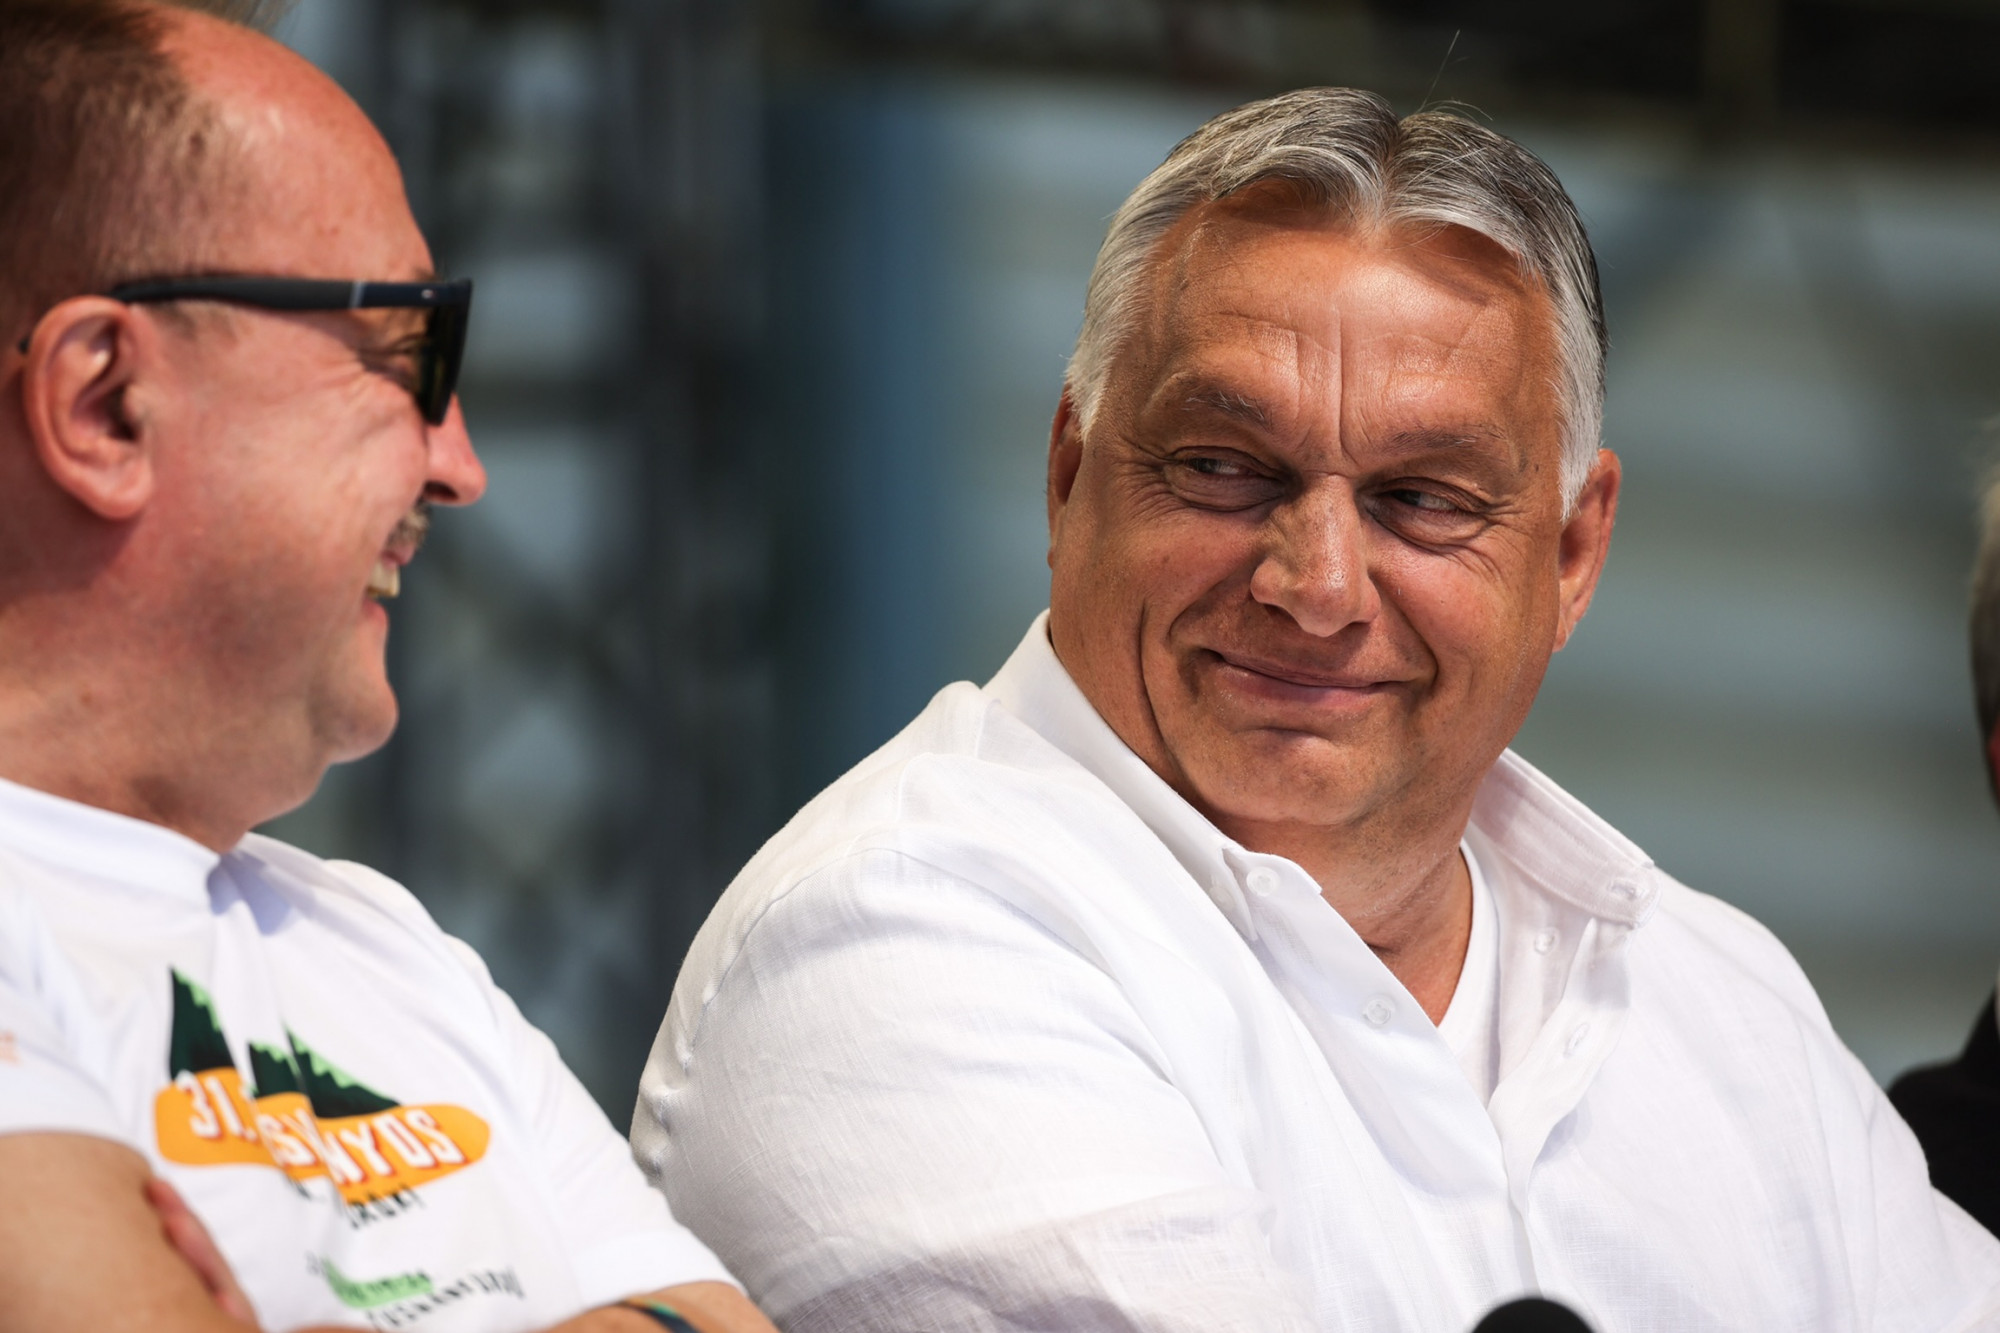 Közös nyilatkozatban ítélte el Orbán „nyíltan rasszista” beszédét az Európai Parlament összes nagyobb pártja